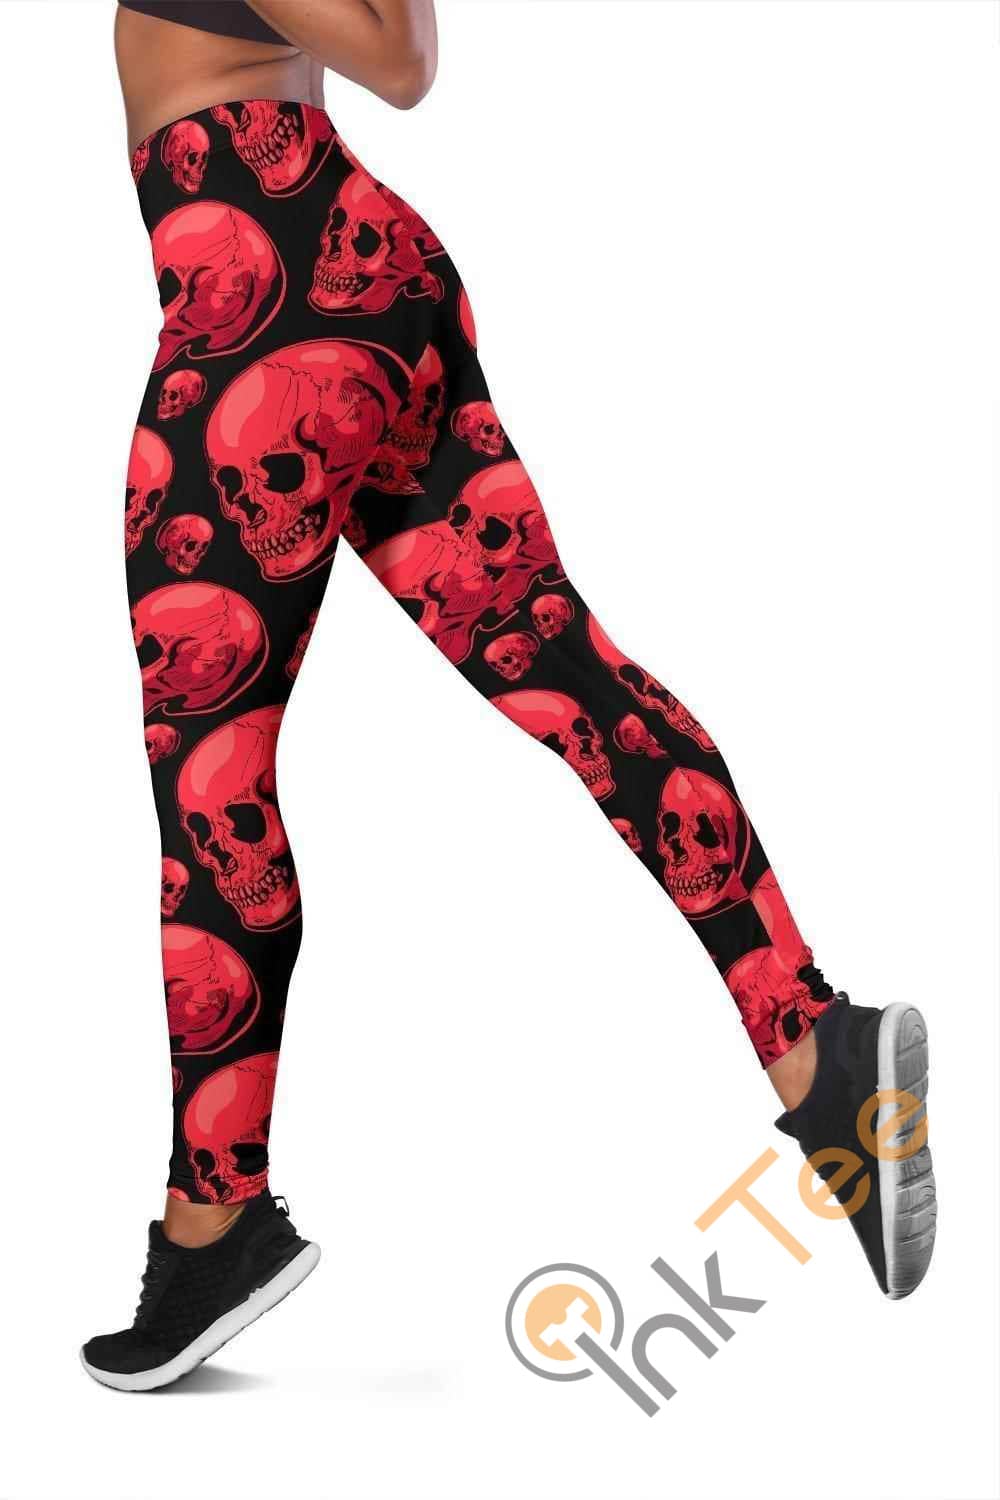 Inktee Store - Dark Pink Skull 3D All Over Print For Yoga Fitness Women'S Leggings Image